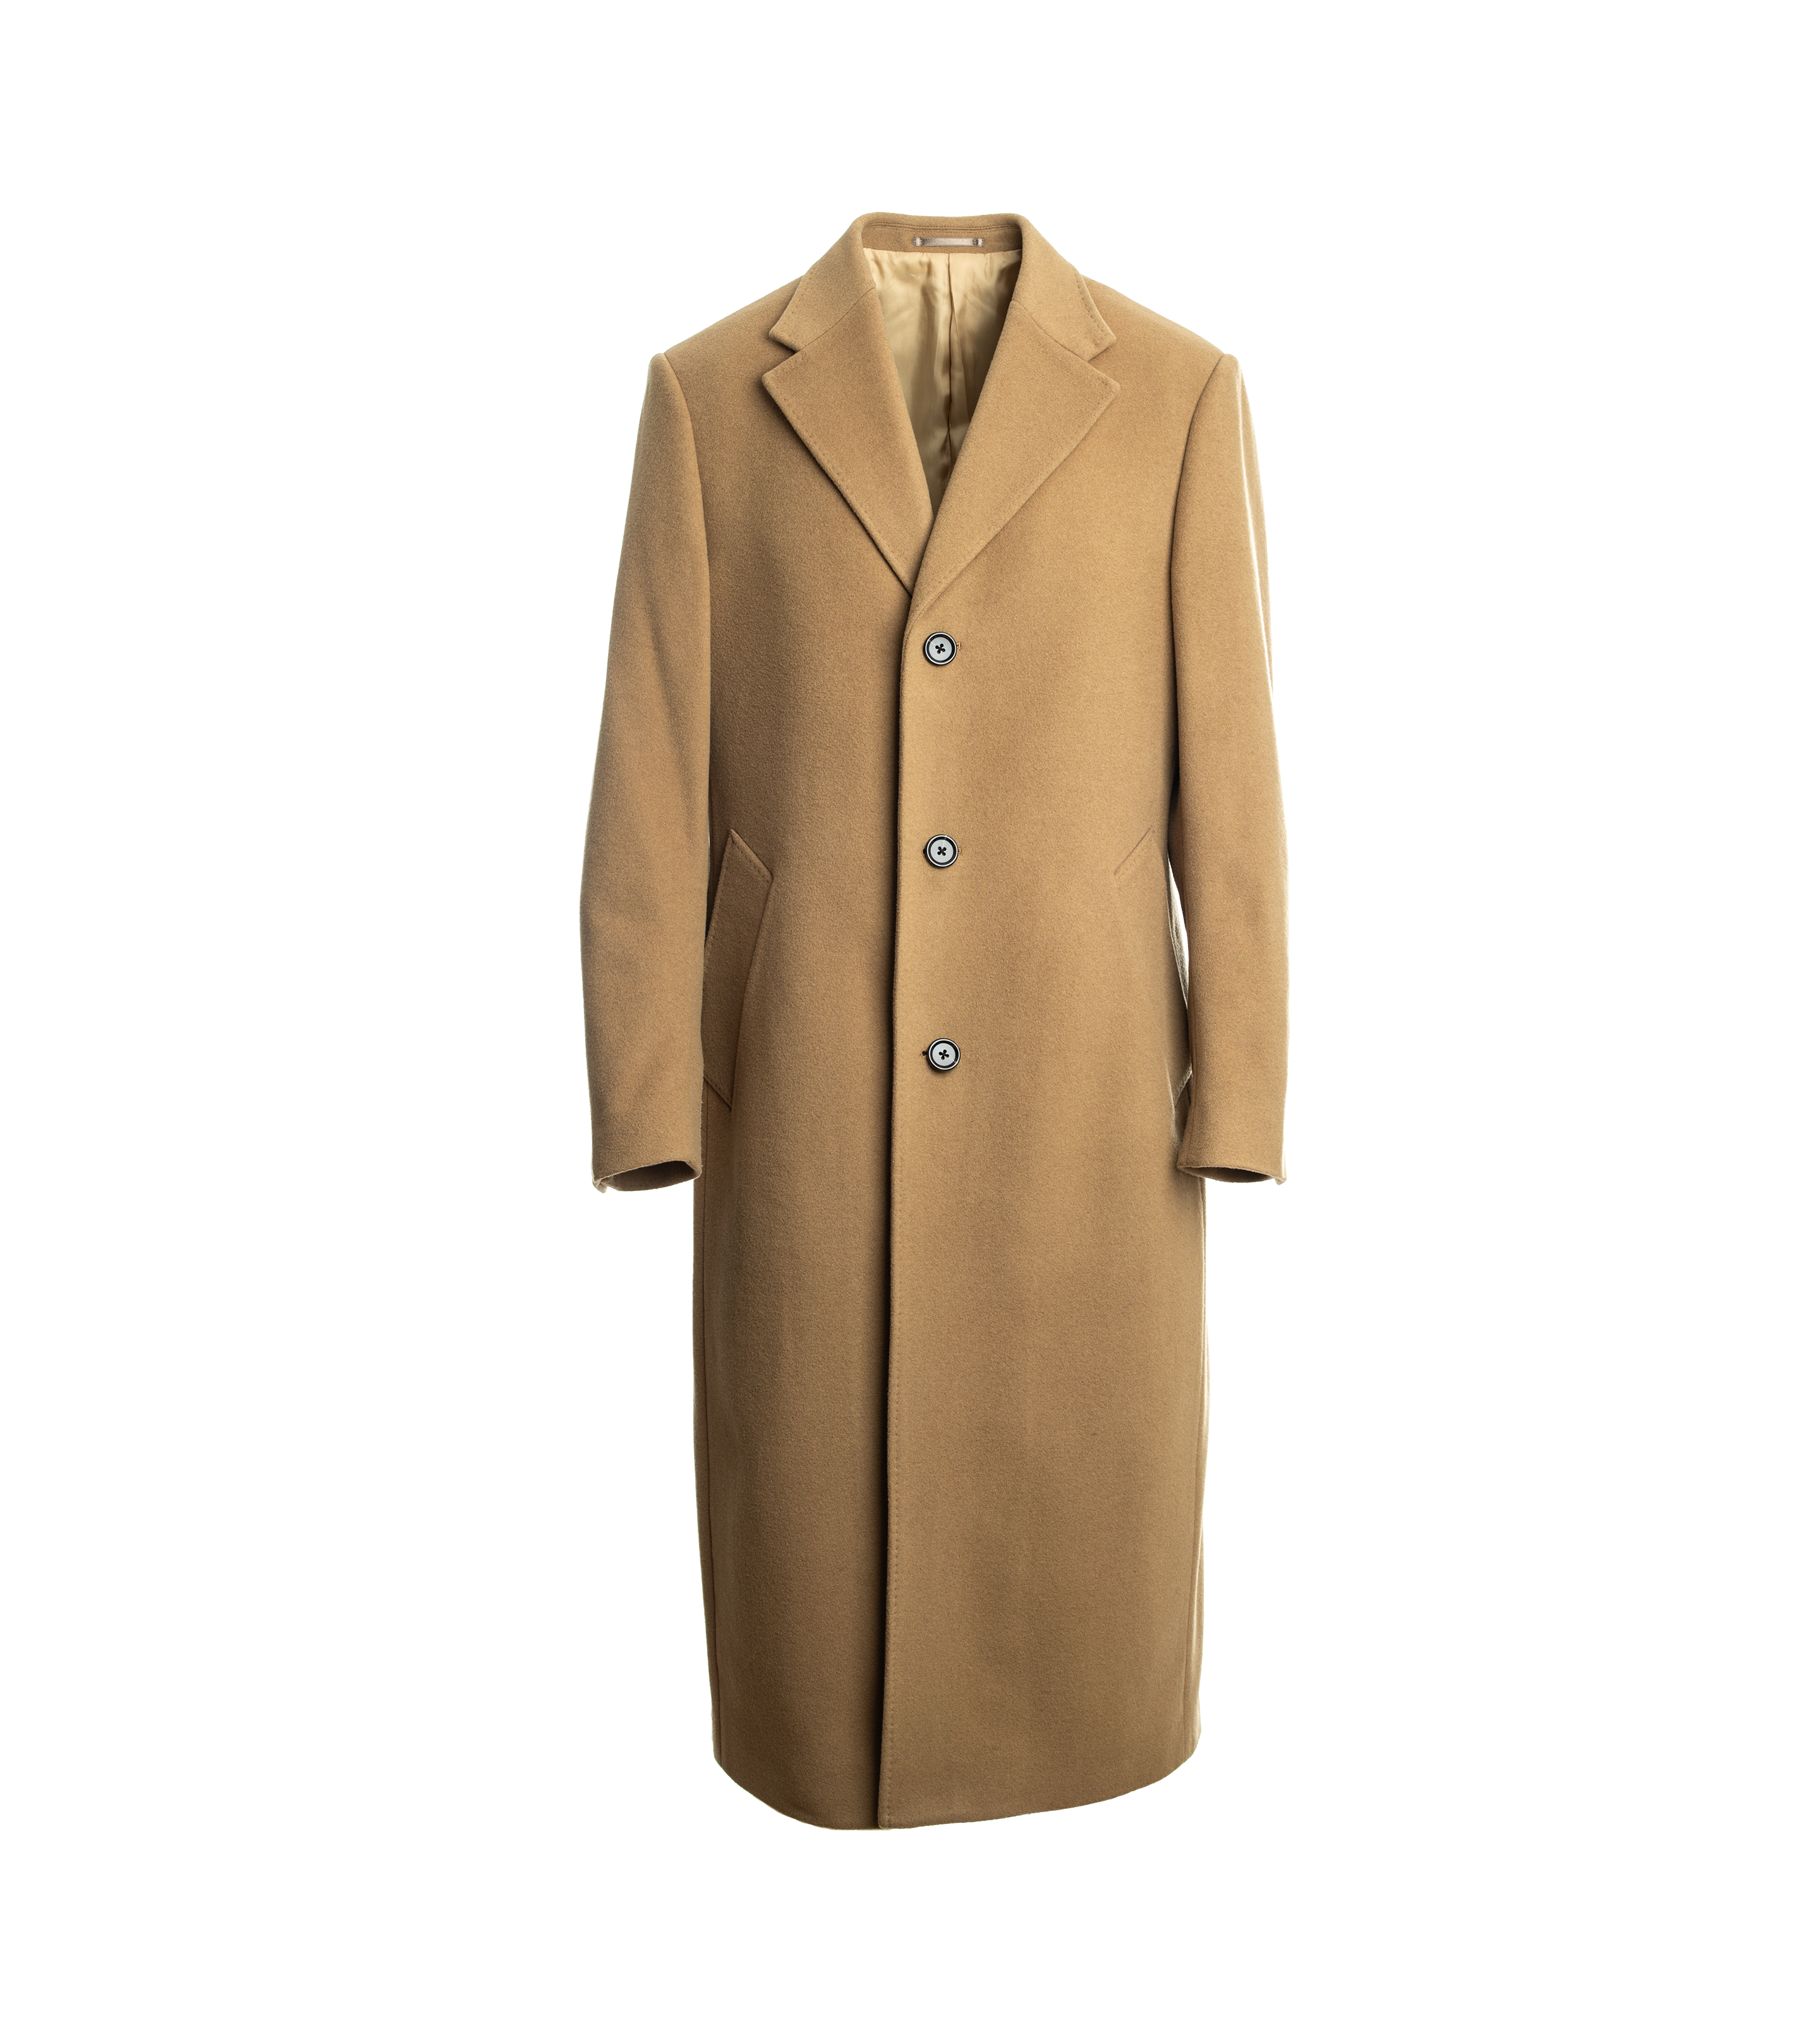 Camel Color Wool/Cashmere Blend Overcoat